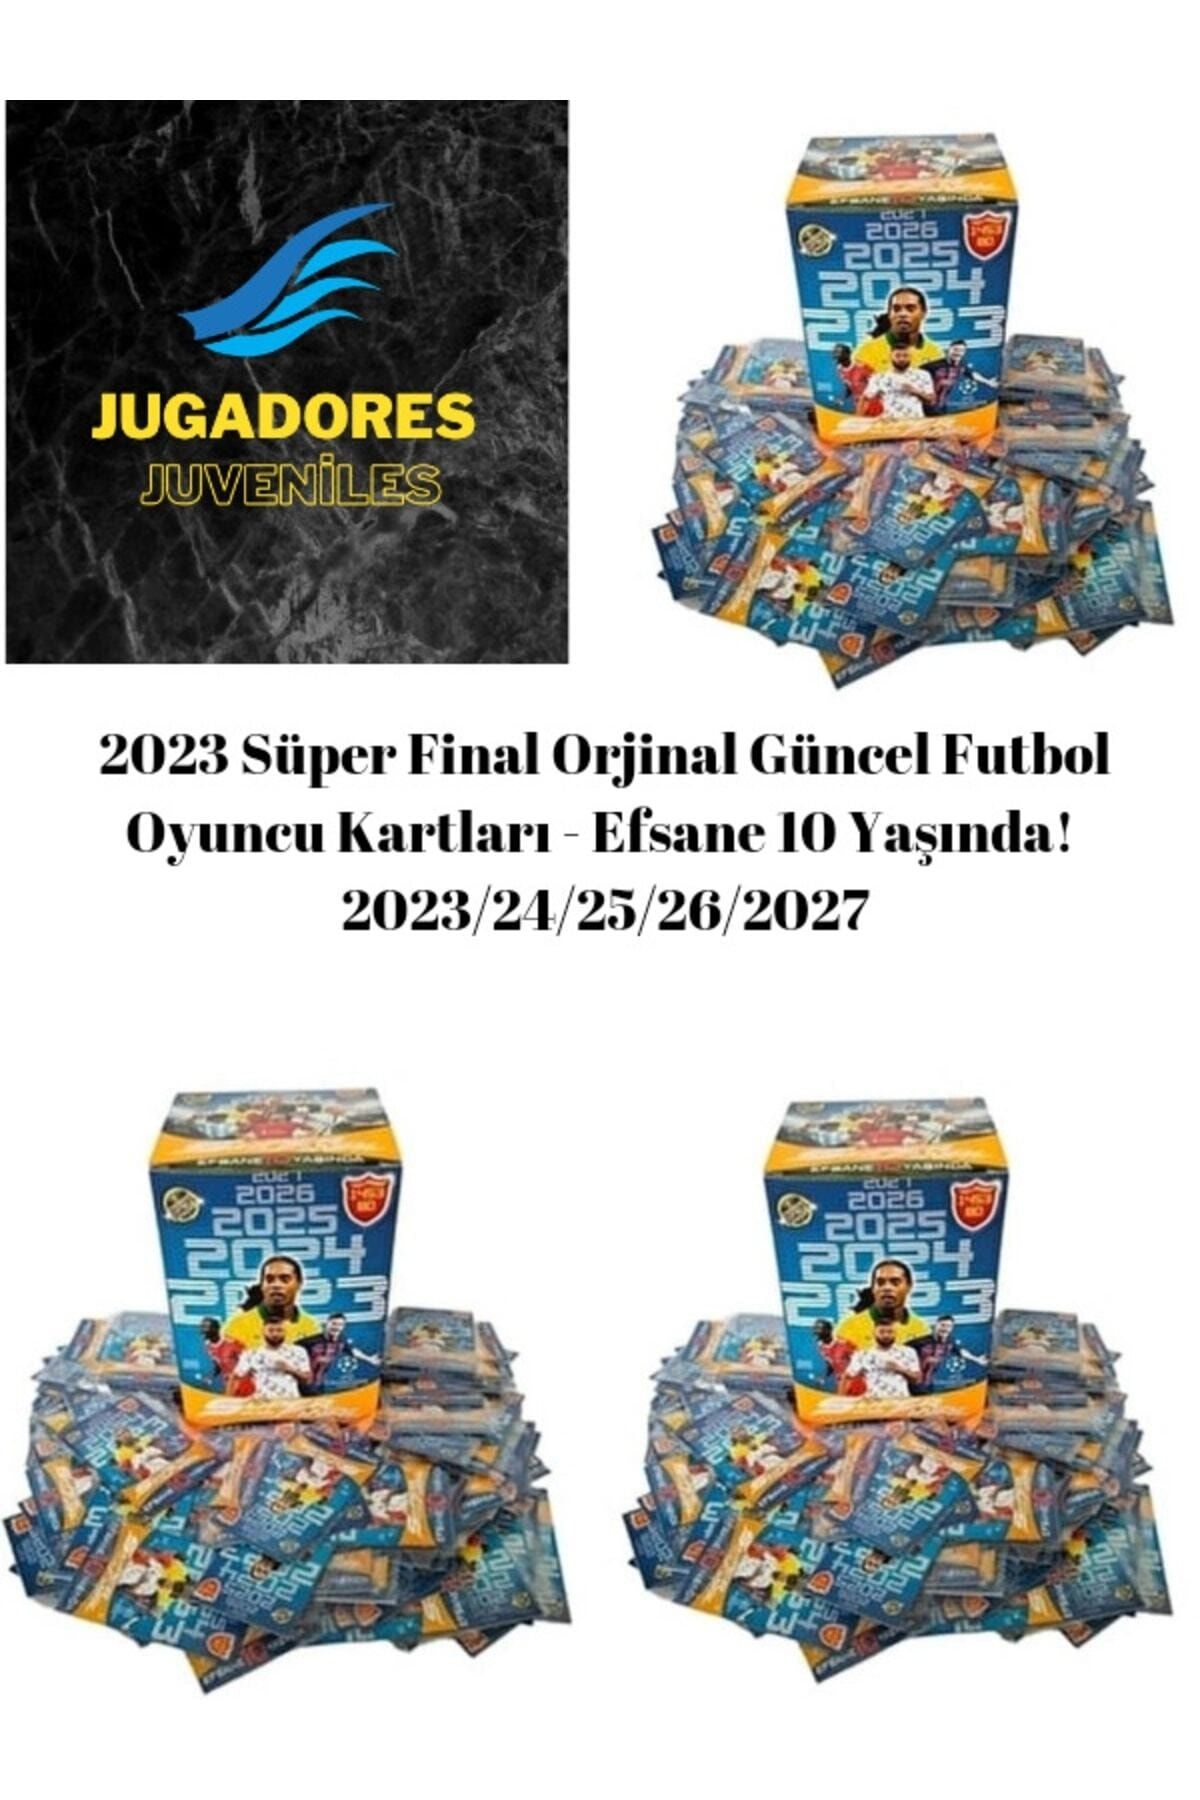 Cartas de jugador de fútbol, 2023 Super Final Original, 400 piezas, Legend,  10 años - AliExpress